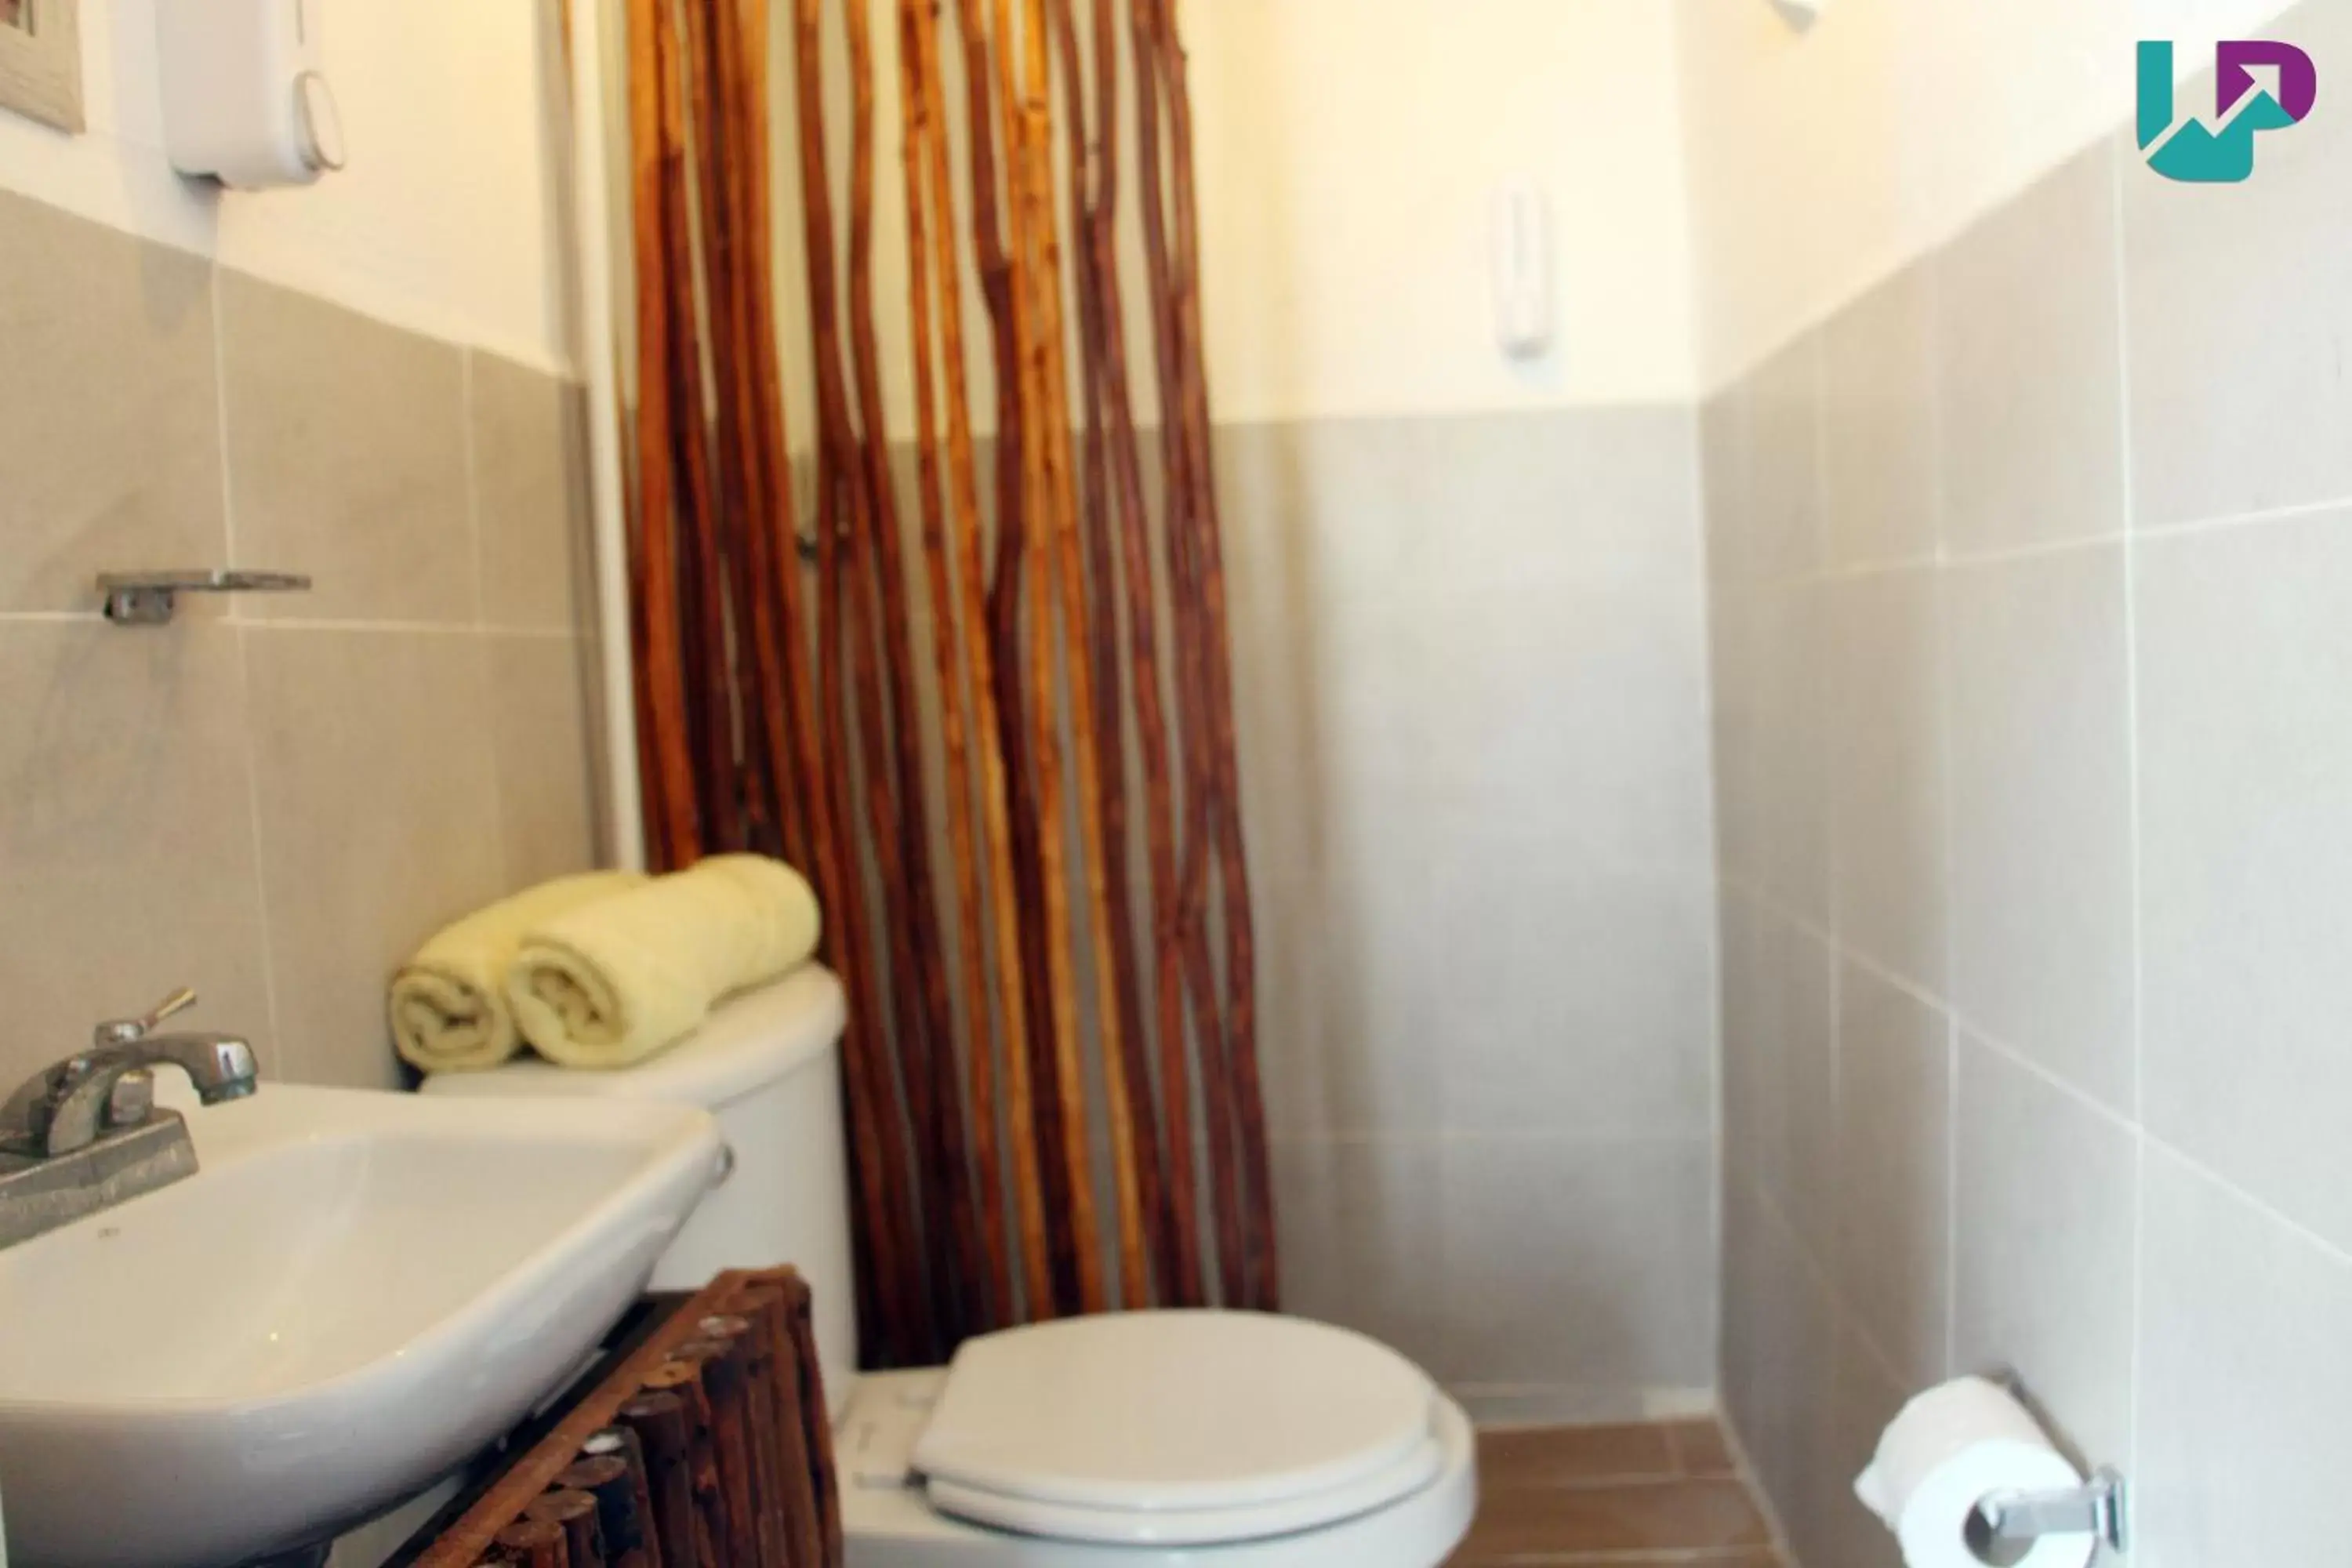 Bathroom in Hotel Casa de luz Playa del Carmen